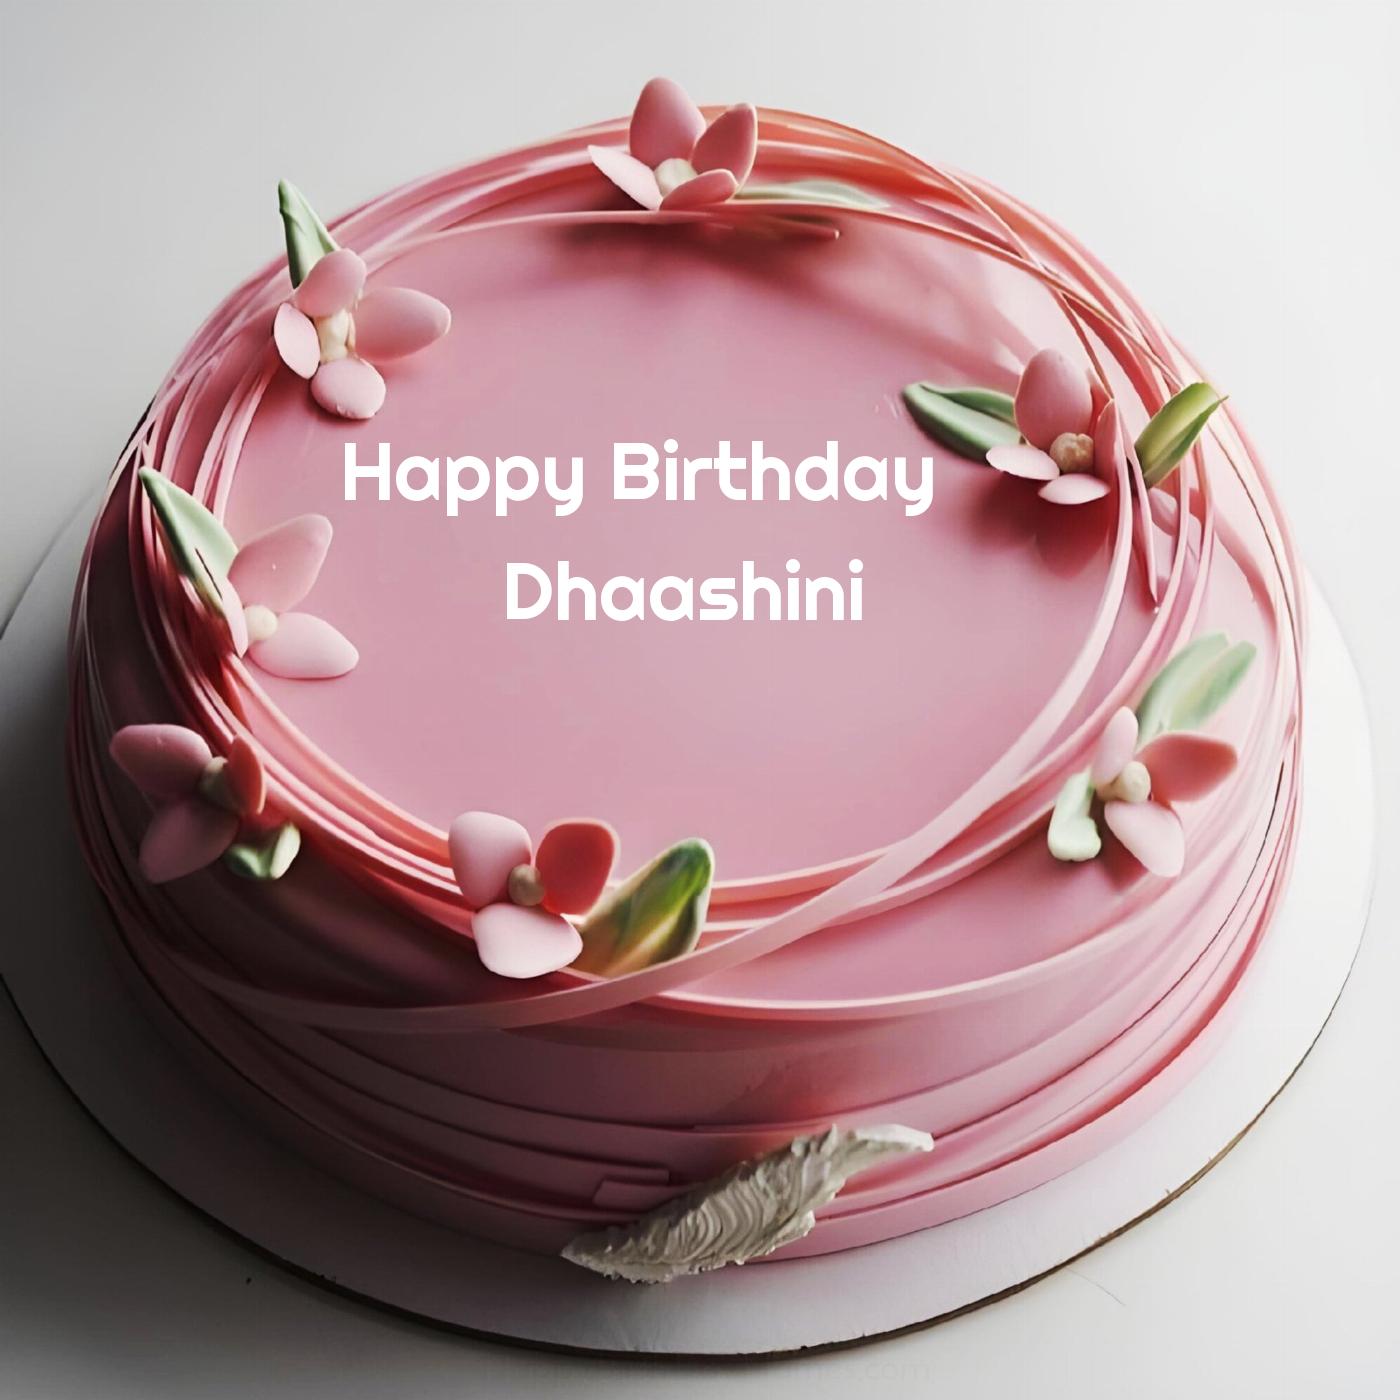 Happy Birthday Dhaashini Pink Flowers Cake